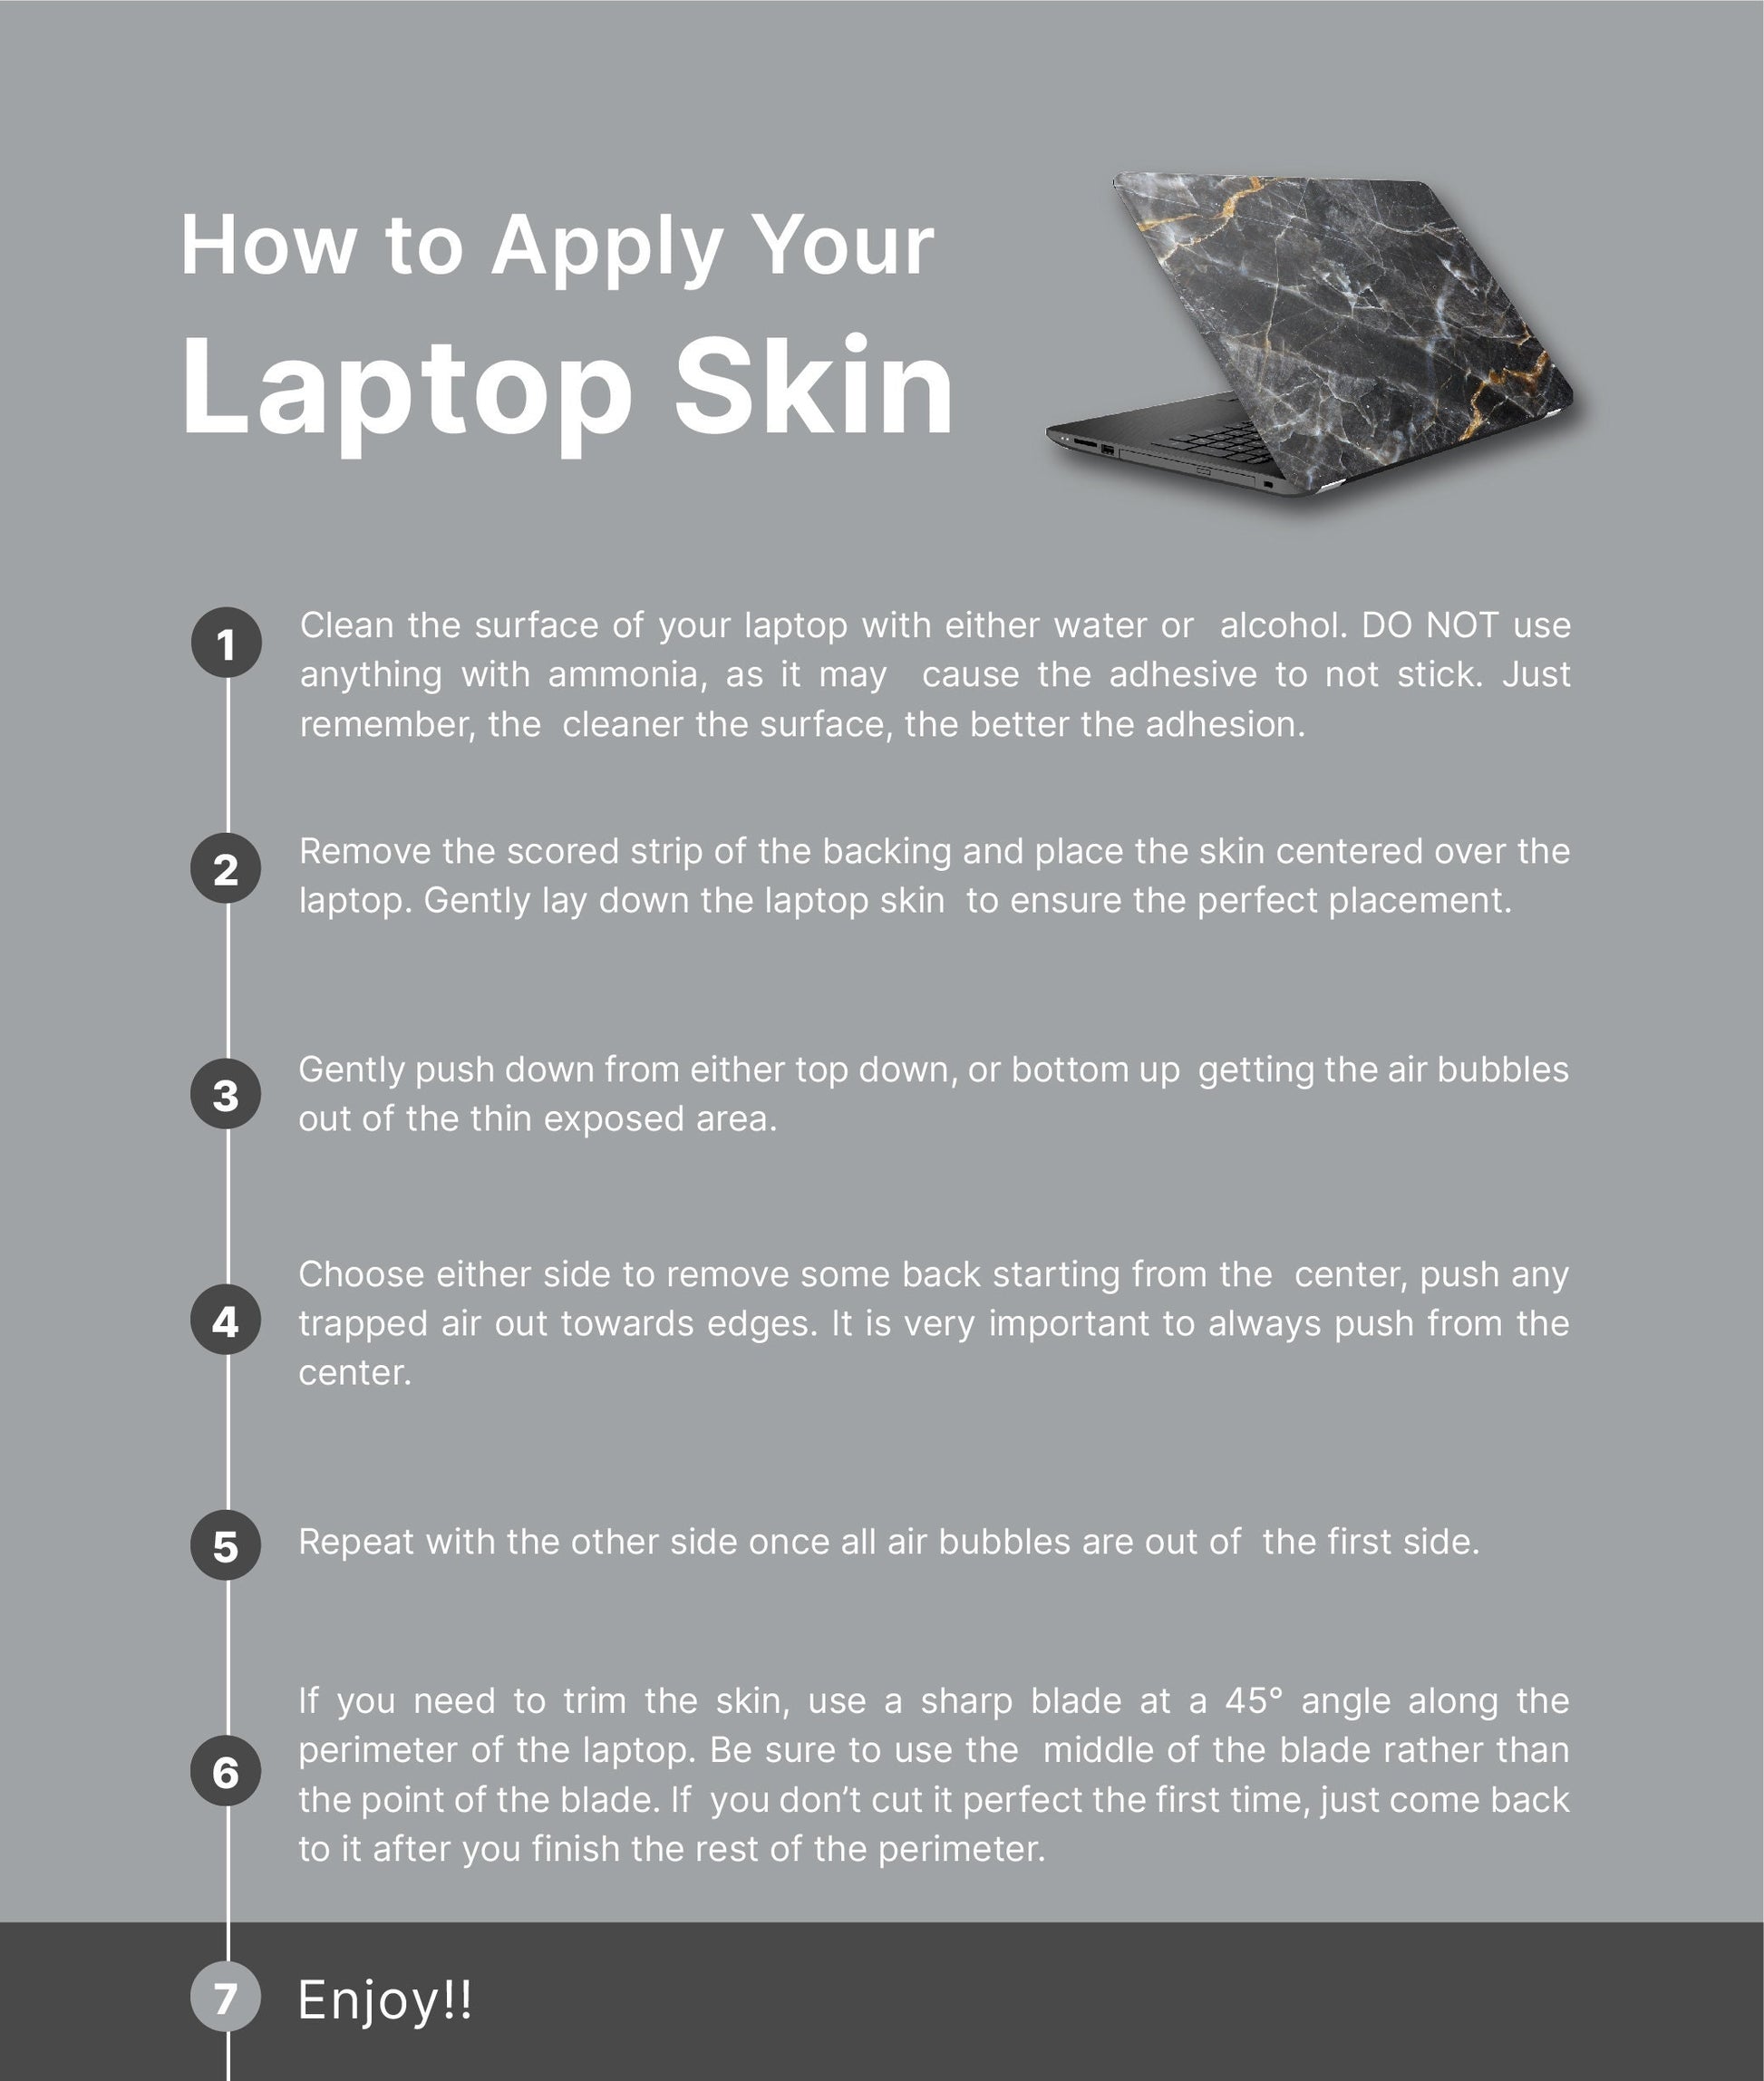 Boho Cactus Cute Laptop Skin, Laptop Cover, Laptop Skins, Removable Laptop Skins, Laptop Decal, Customized Laptop Skin, Laptop Stickers 107 - James & Inks